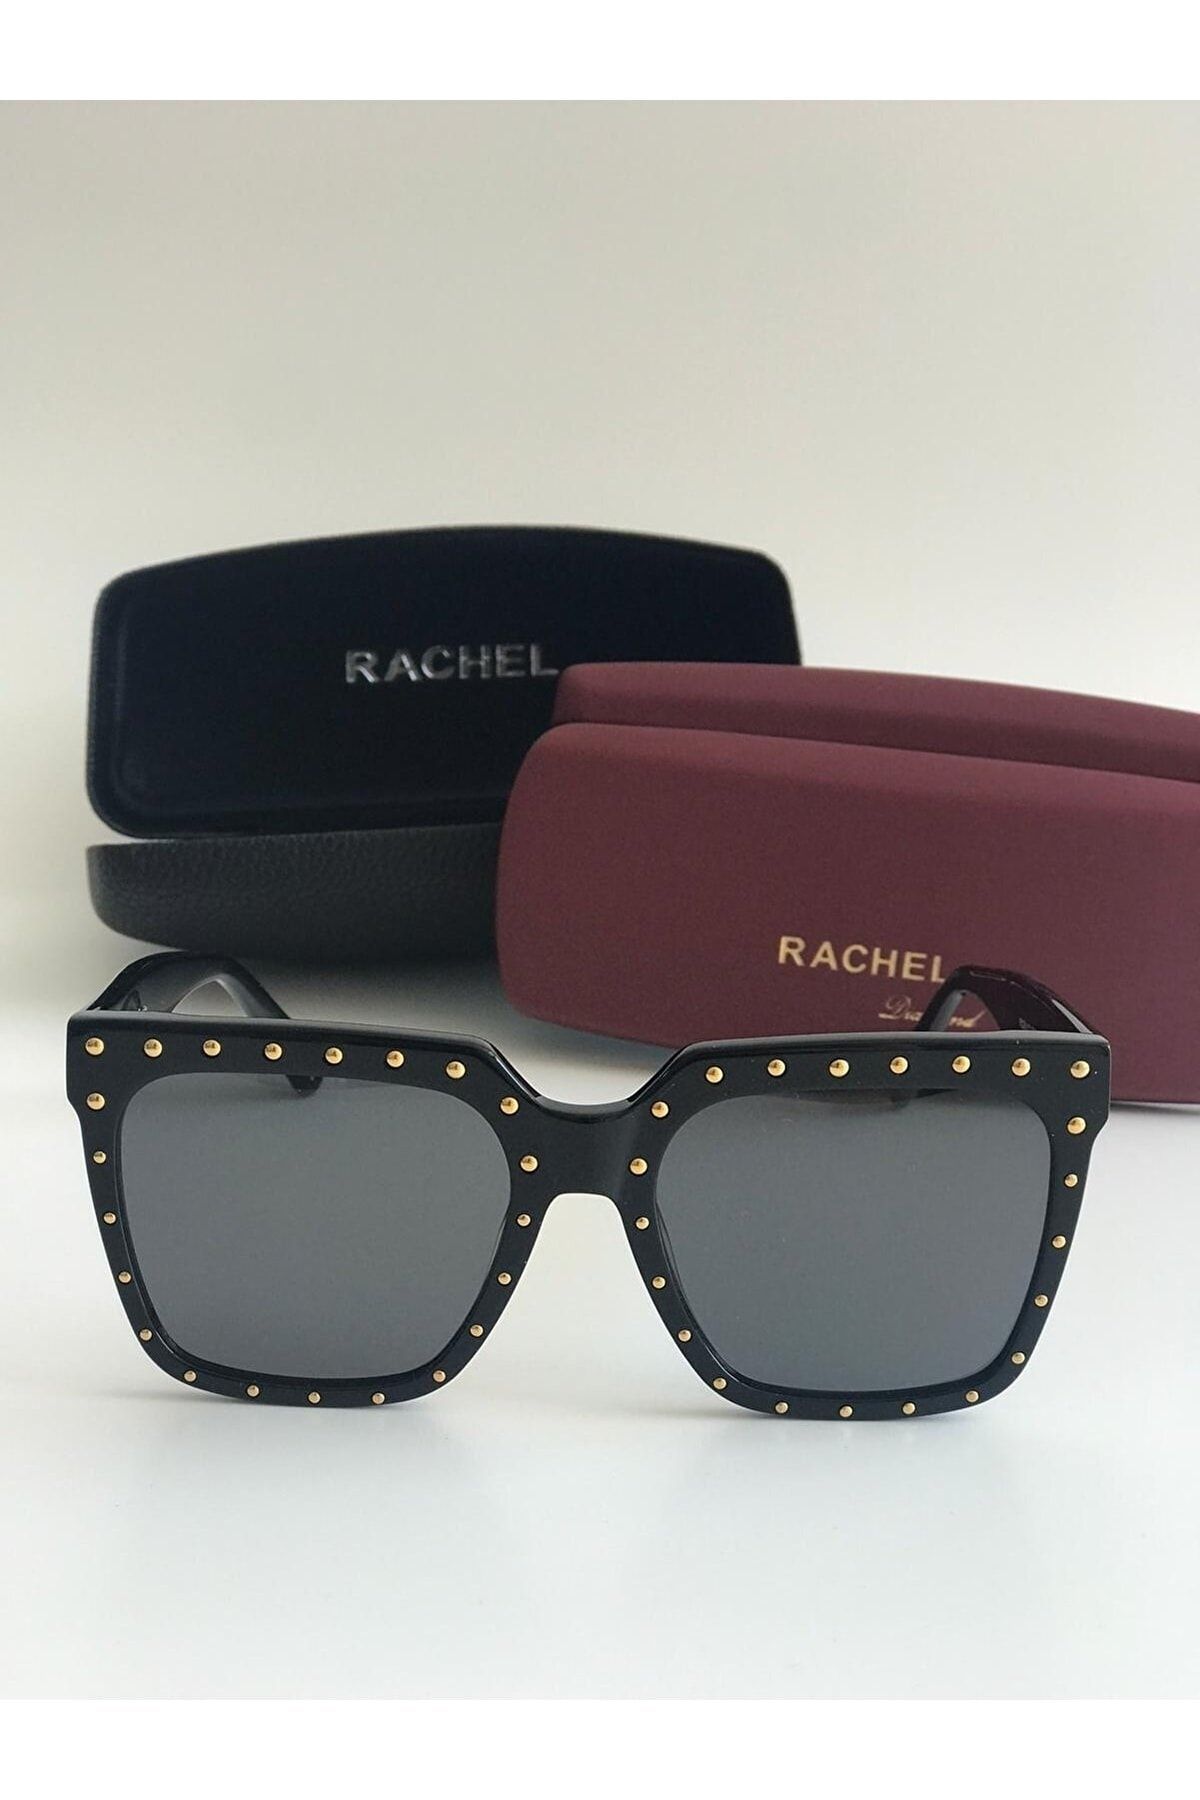 Rachel Paris Güneş Gözlüğü